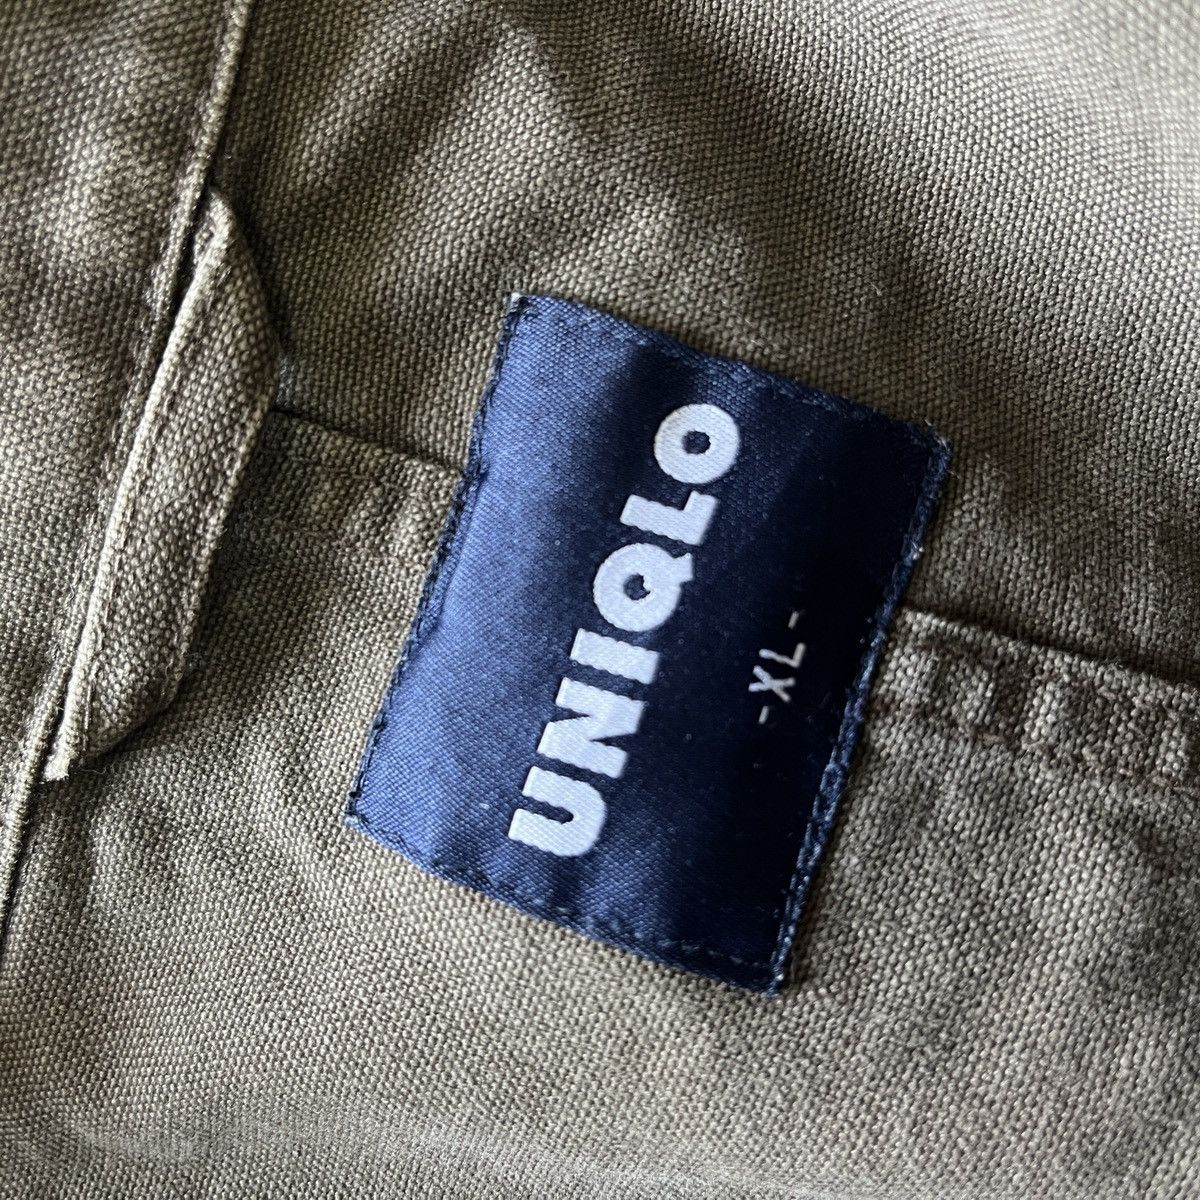 Uniqlo Chore Jacket Japan Size XL - 16